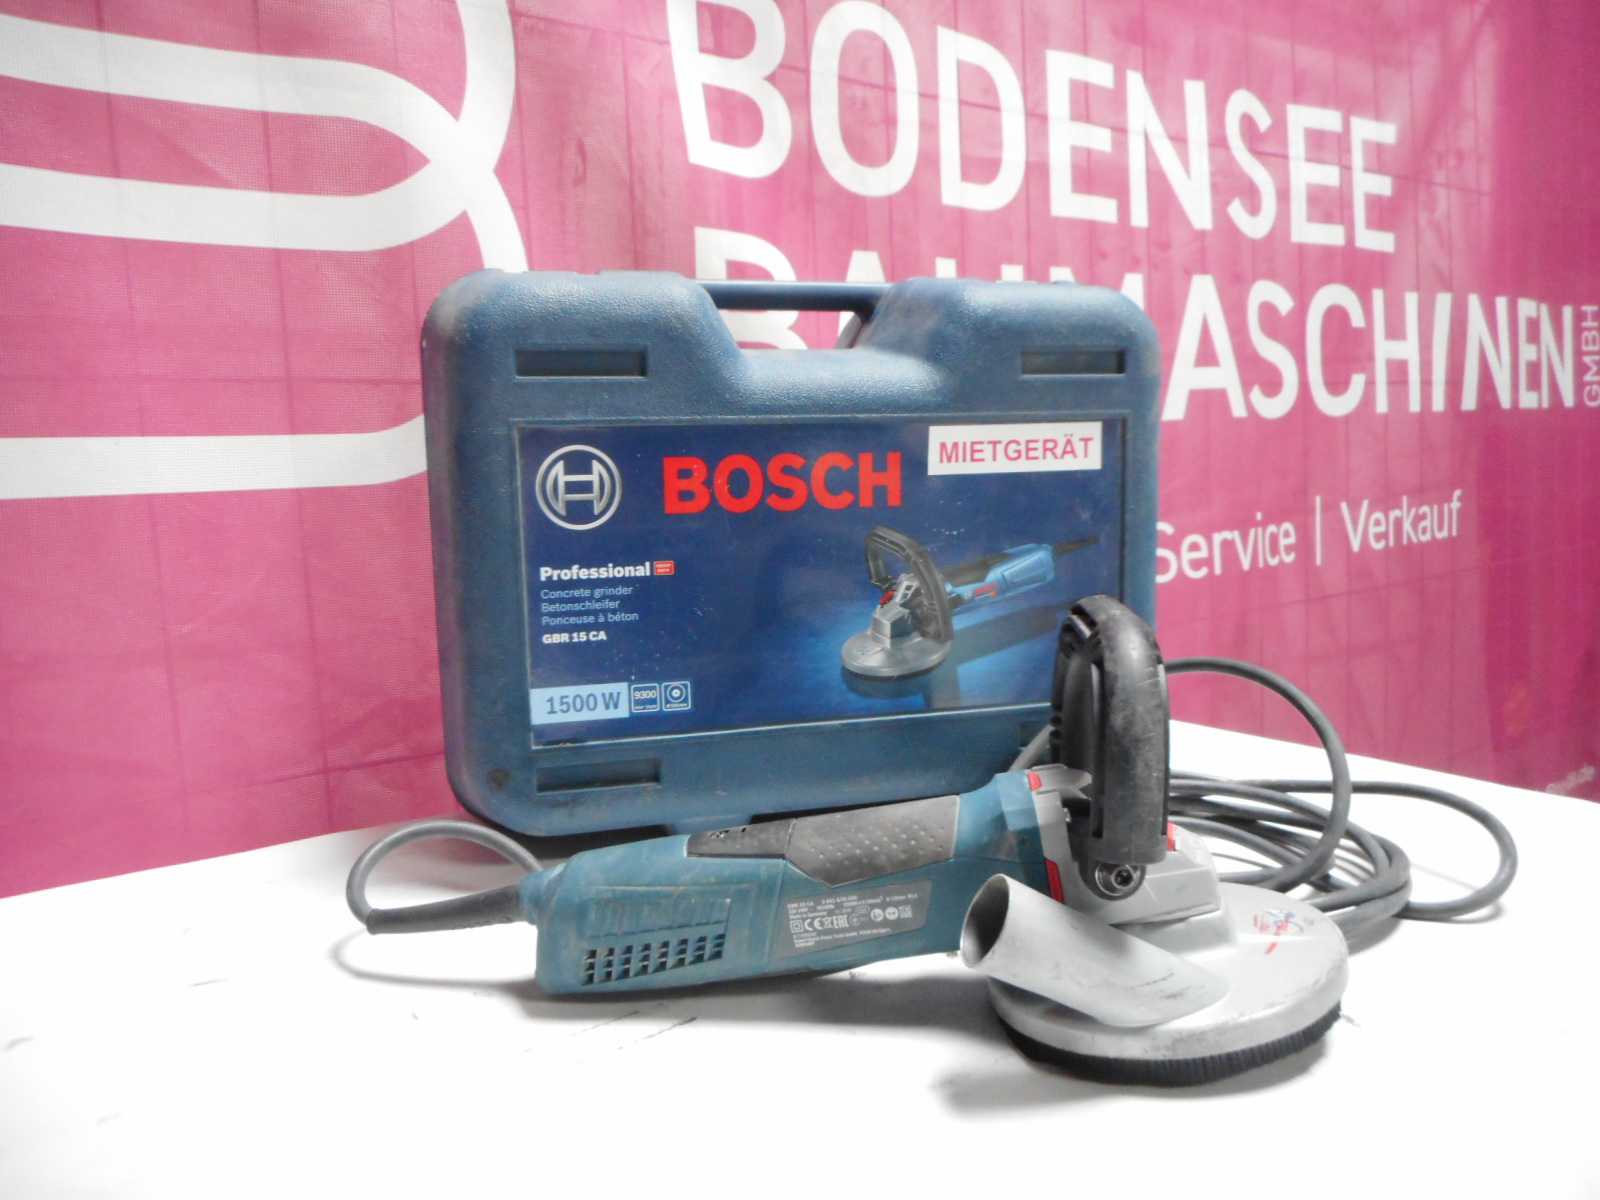 Bosch Betonschleifer